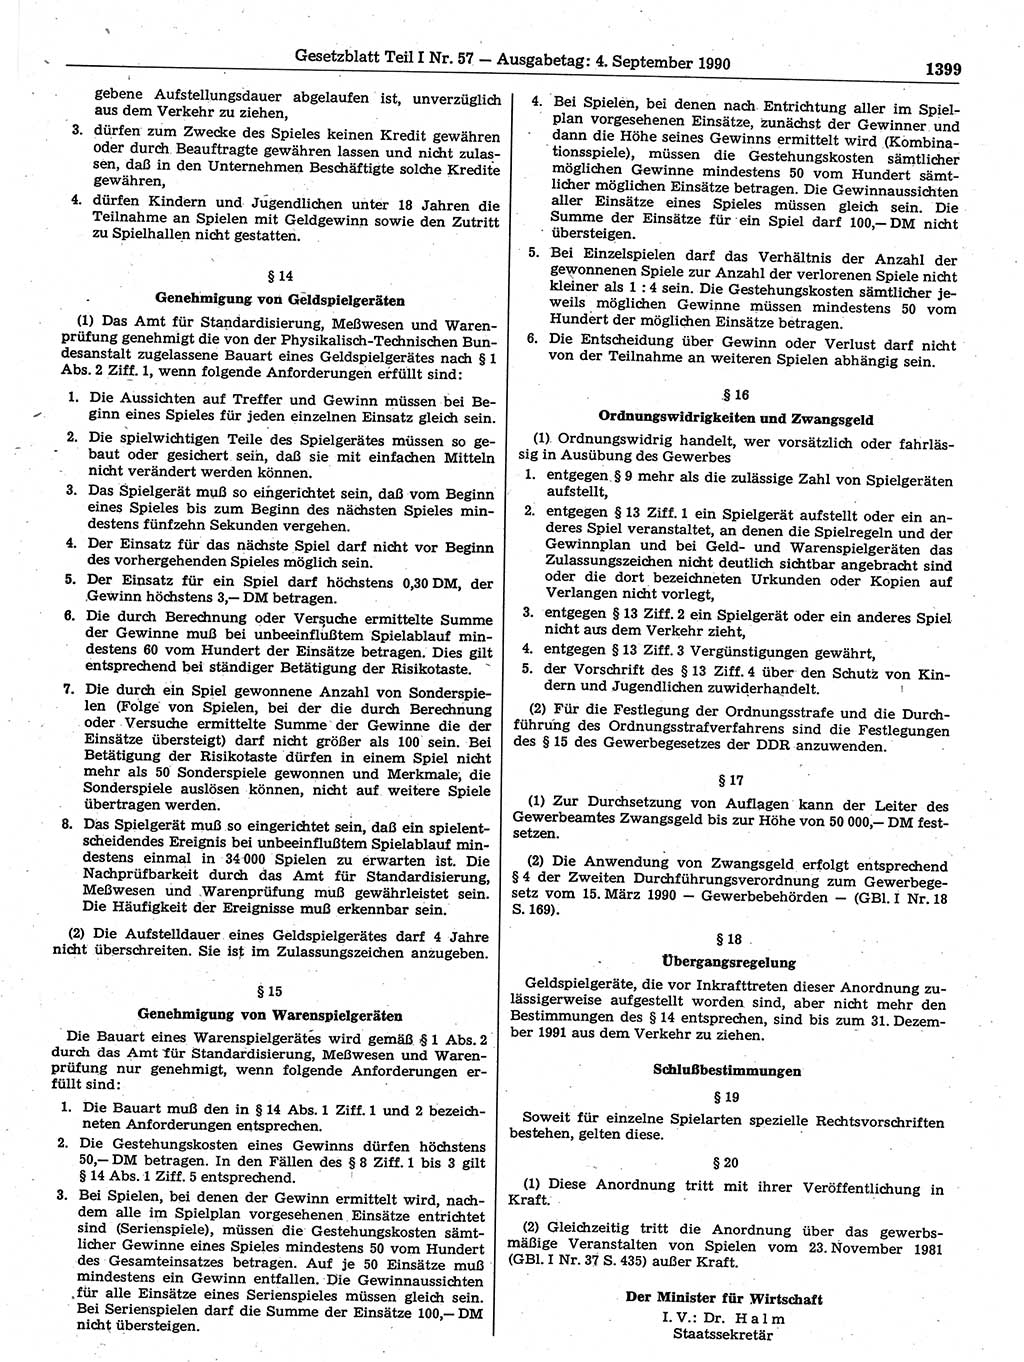 Gesetzblatt (GBl.) der Deutschen Demokratischen Republik (DDR) Teil Ⅰ 1990, Seite 1399 (GBl. DDR Ⅰ 1990, S. 1399)